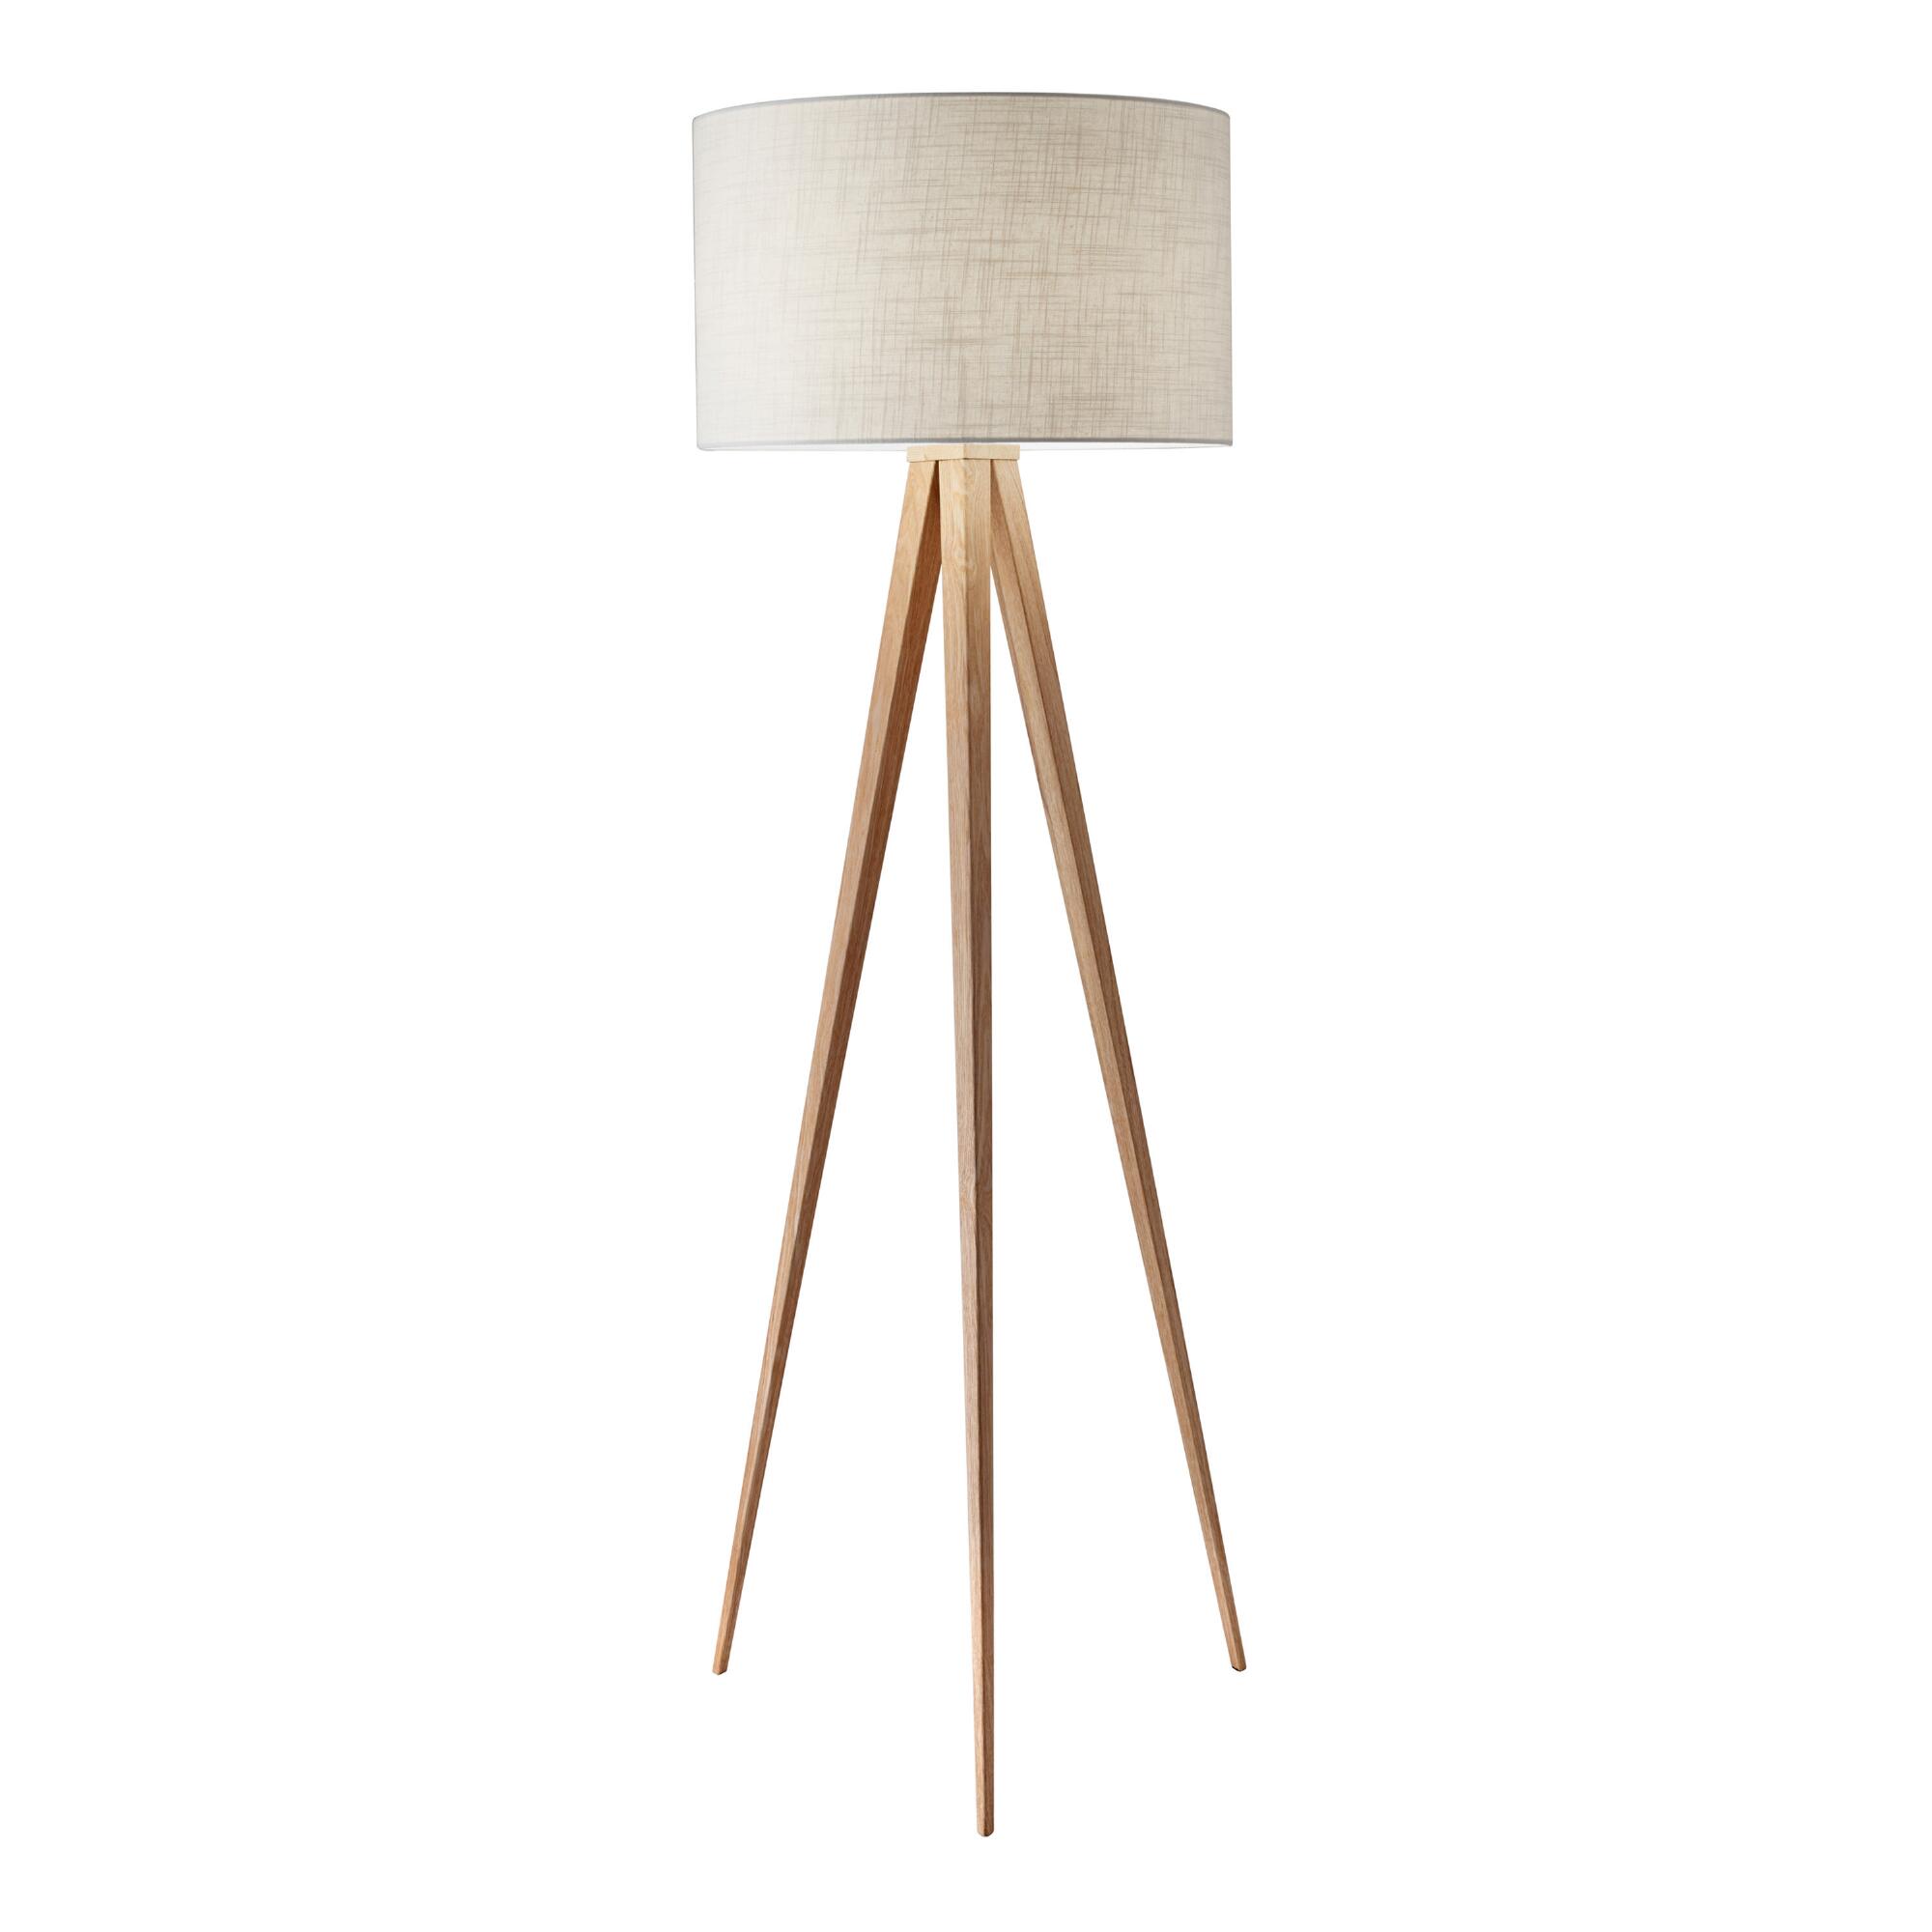 Oak Wood Tripod Lynnette Floor Lamp: Natural by World Market